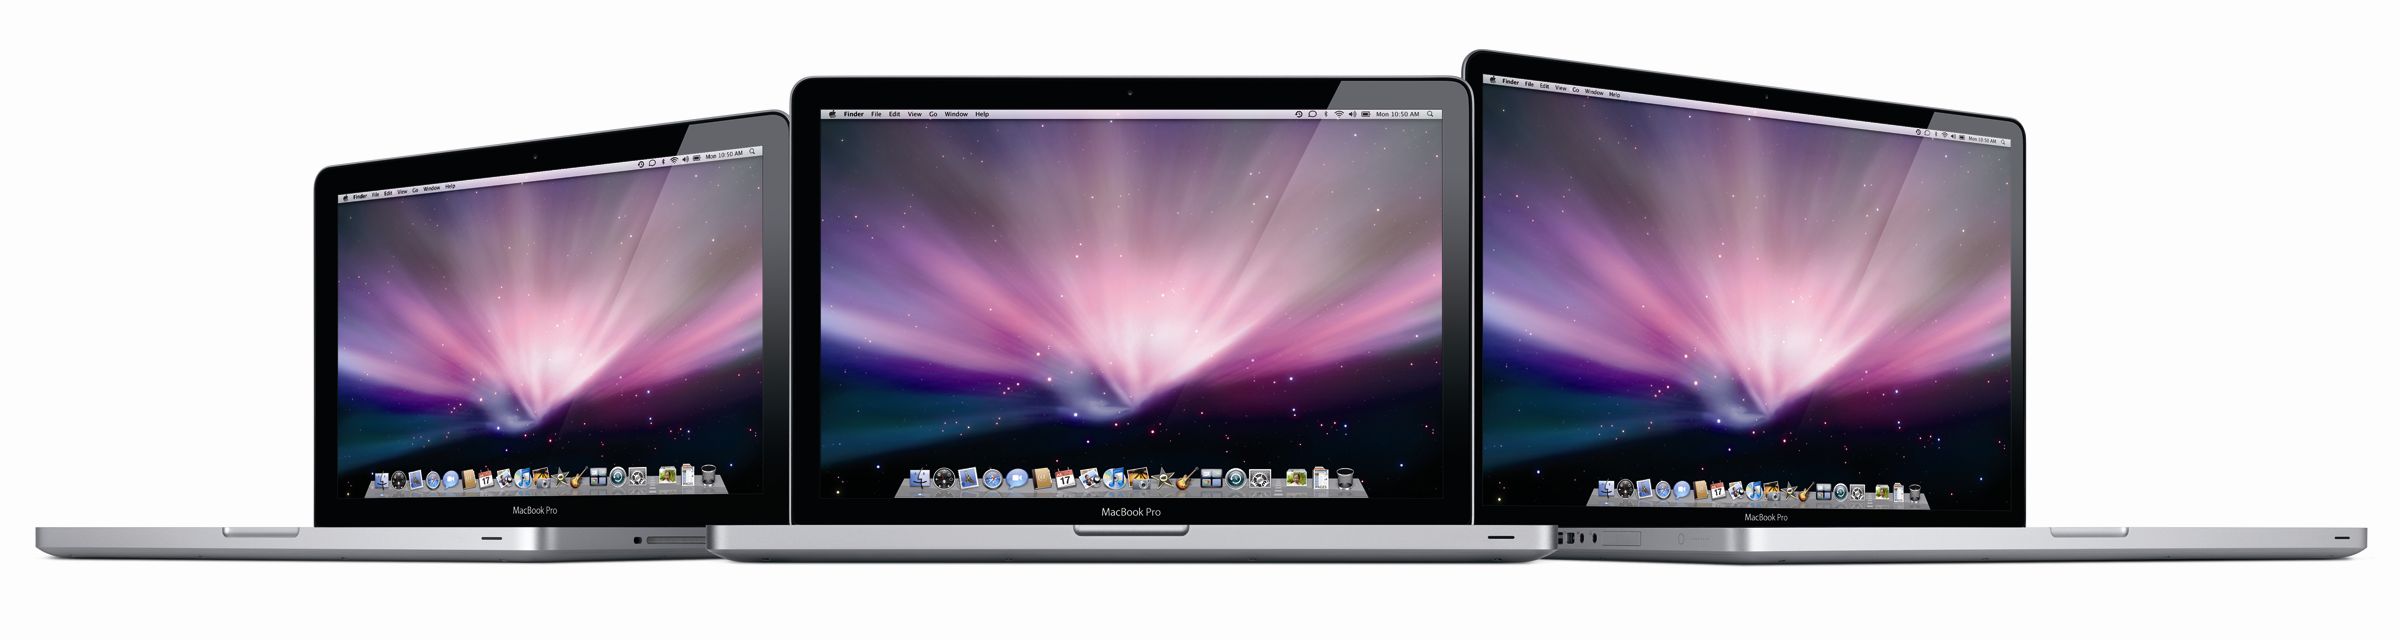 Immagine pubblicata in relazione al seguente contenuto: Apple amplia la gamma dei notebook MacBook Pro unibody | Nome immagine: news10640_1.jpg